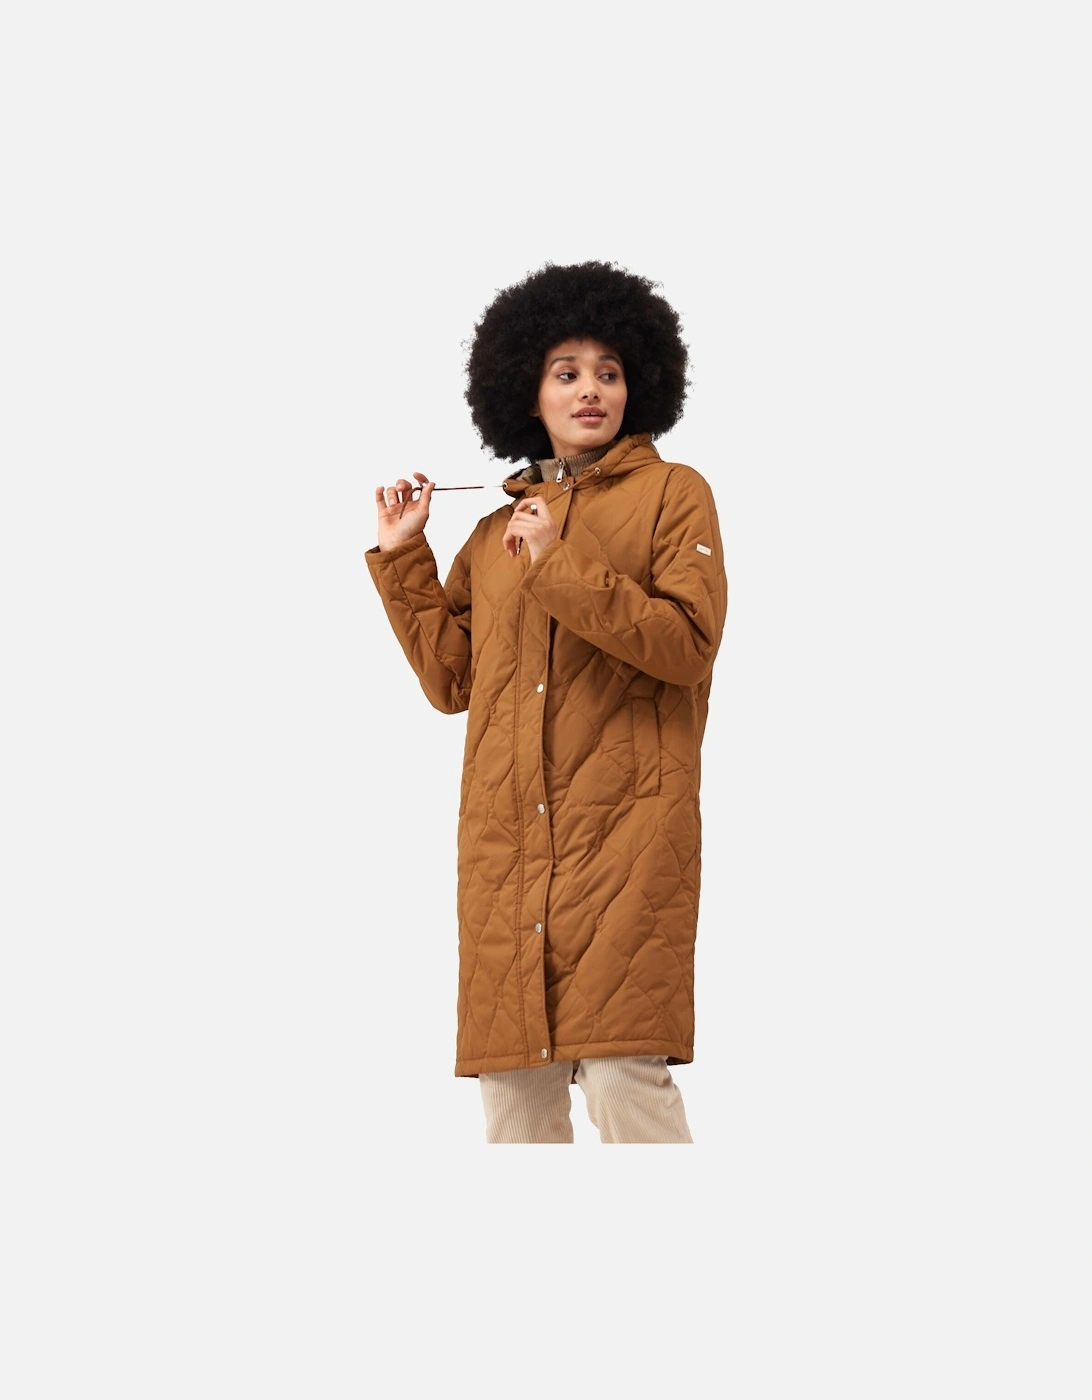 Womens/Ladies Jaycee Quilted Hooded Jacket